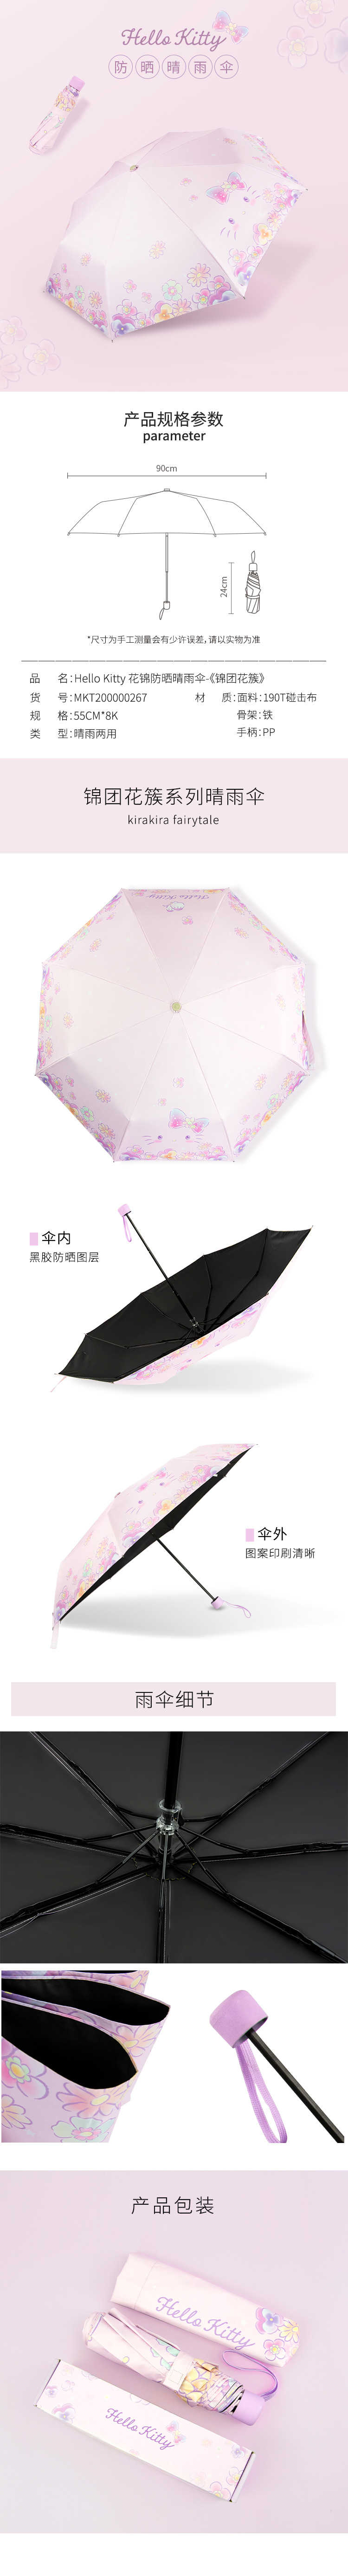 粉色雨伞-详情页.jpg